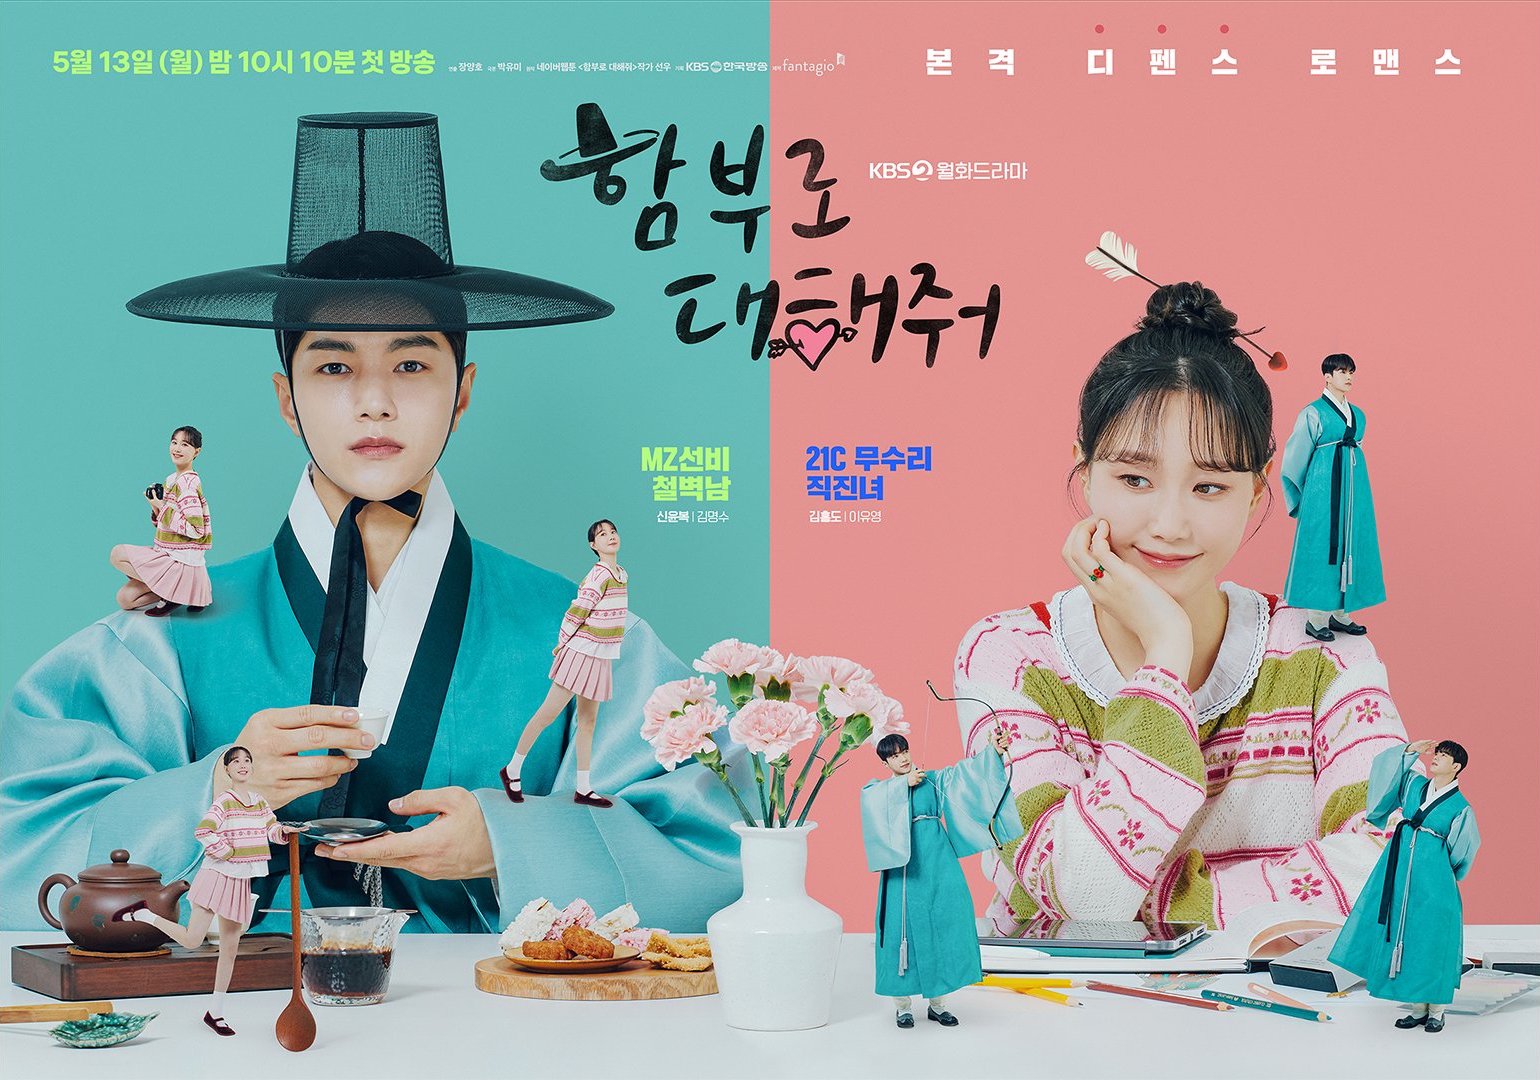 Một sê ri hài lãng mạn khác lên sóng trong tháng 5 năm nay là Dare to Love Me. Chuyển thể từ truyện tranh của tác giả Sun Woo, phim xoay quanh mối lương duyên của cặp đôi Shin Yoon Bok (Kim Myung Soo) và Kim Hong Do (Lee Yoo Young) có tính cách, xuất thân, bối cảnh khác biệt